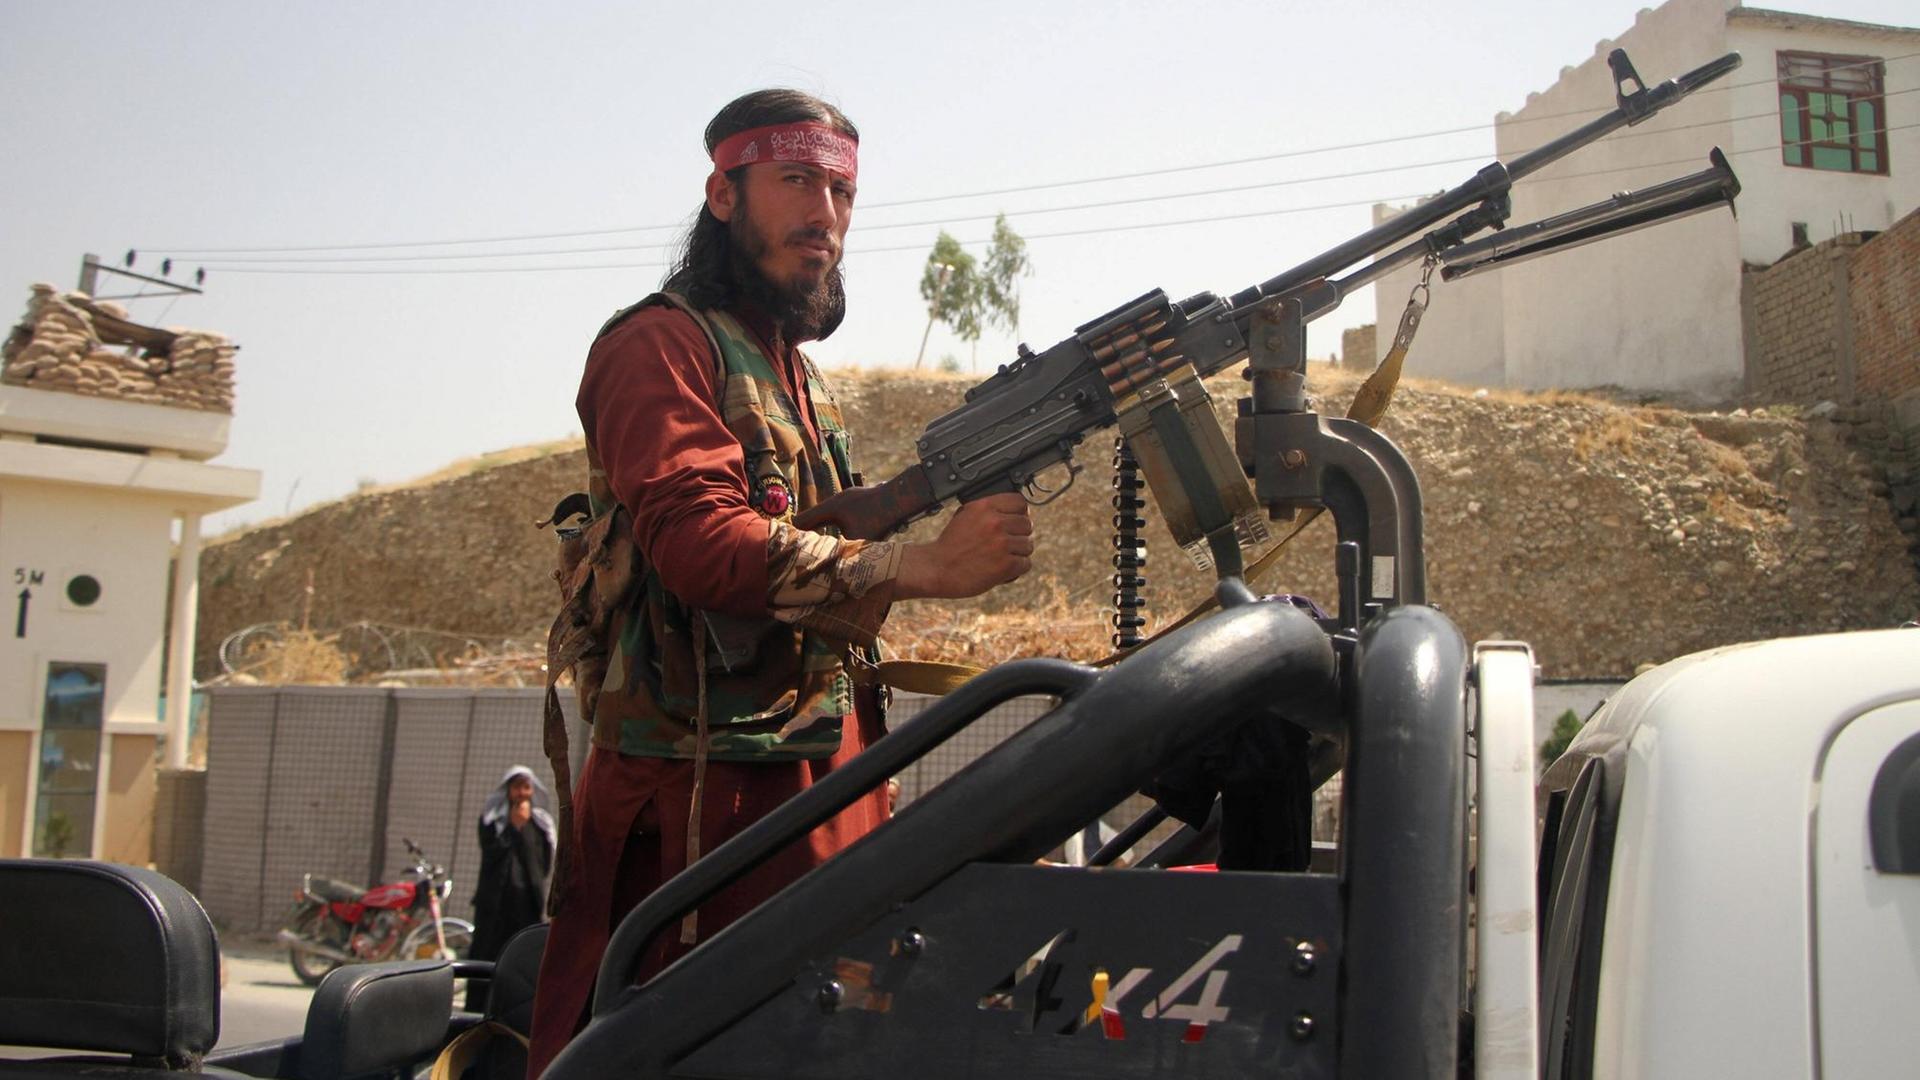 Ein Talban steht an einem großen Maschinengewehr und blickt ernst in die Kamera.